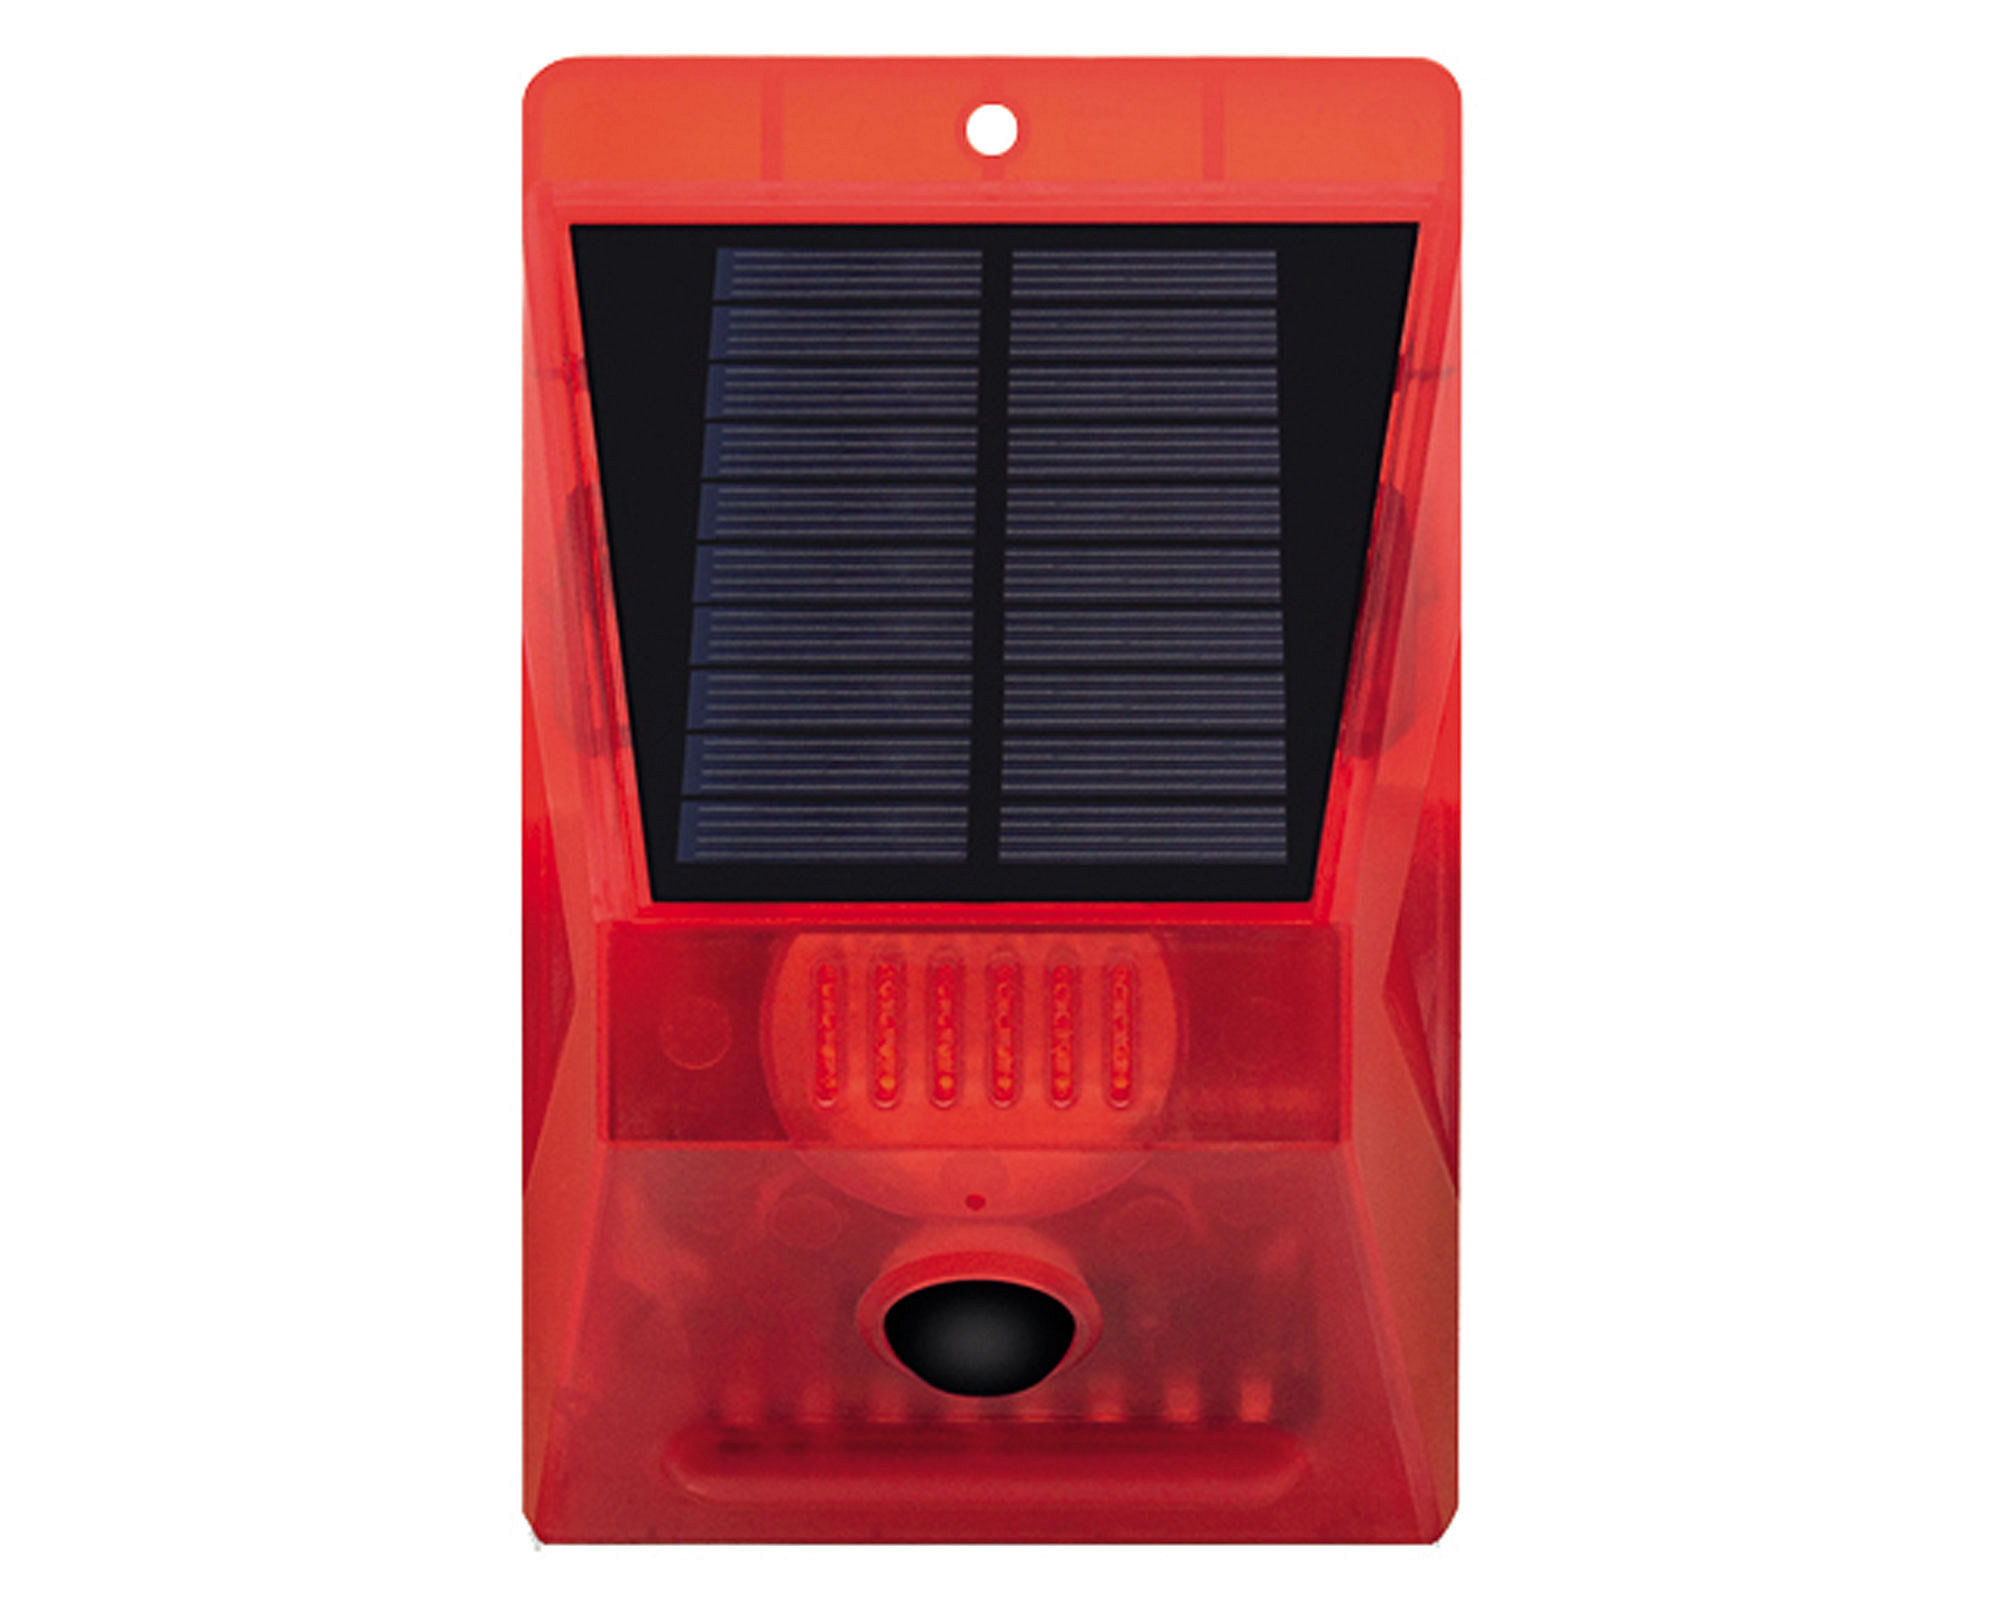 Alarma/baliza solar con control remoto Parksolar